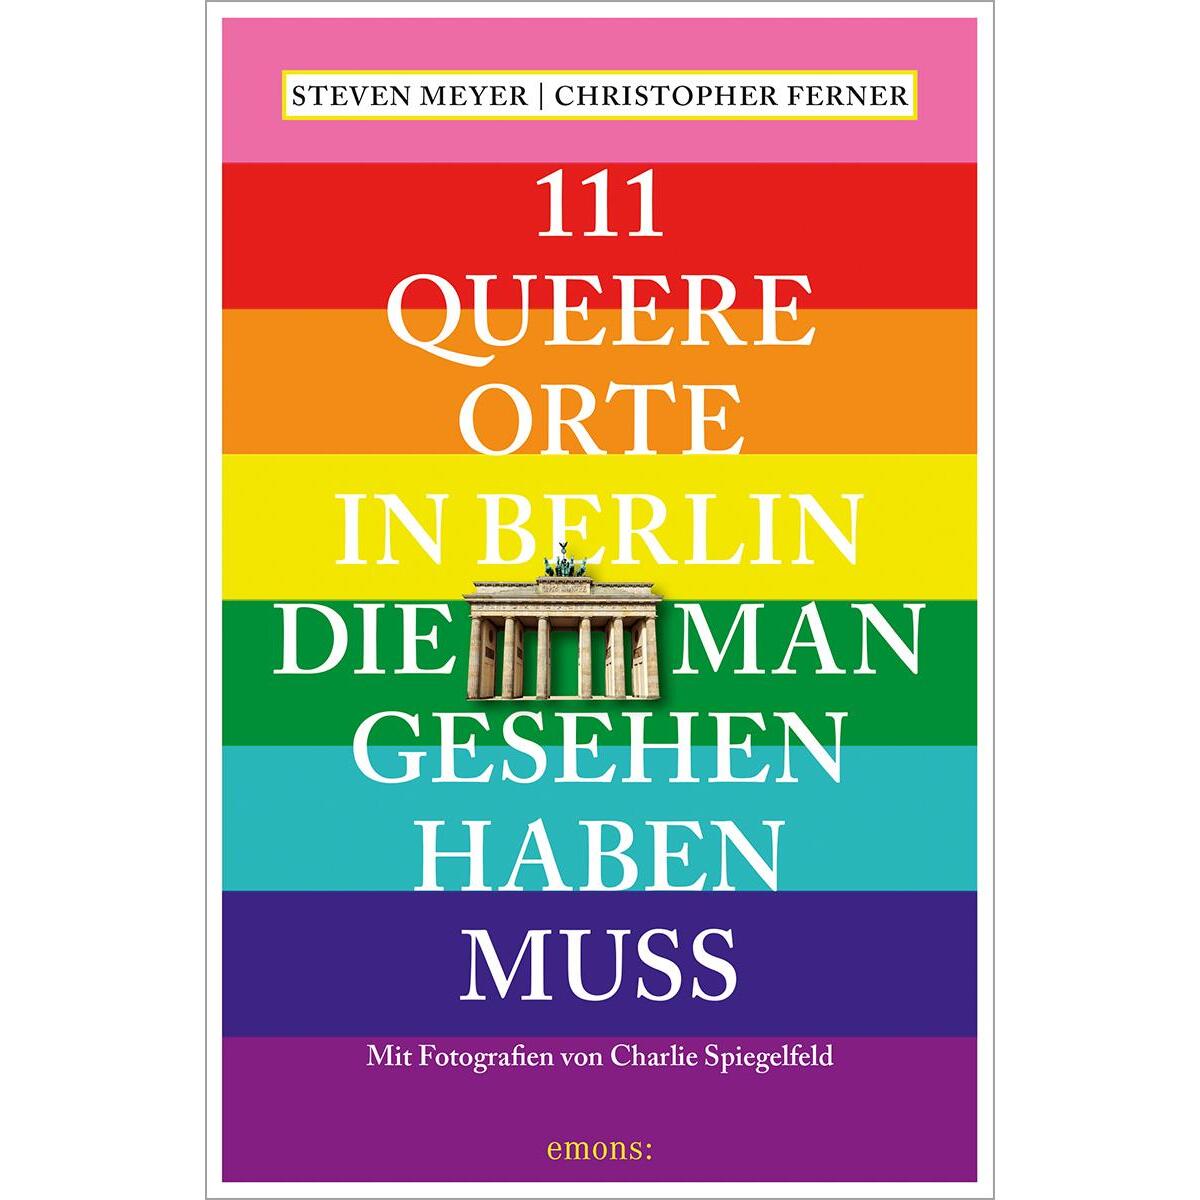 111 queere Orte in Berlin, die man gesehen haben muss von Emons Verlag